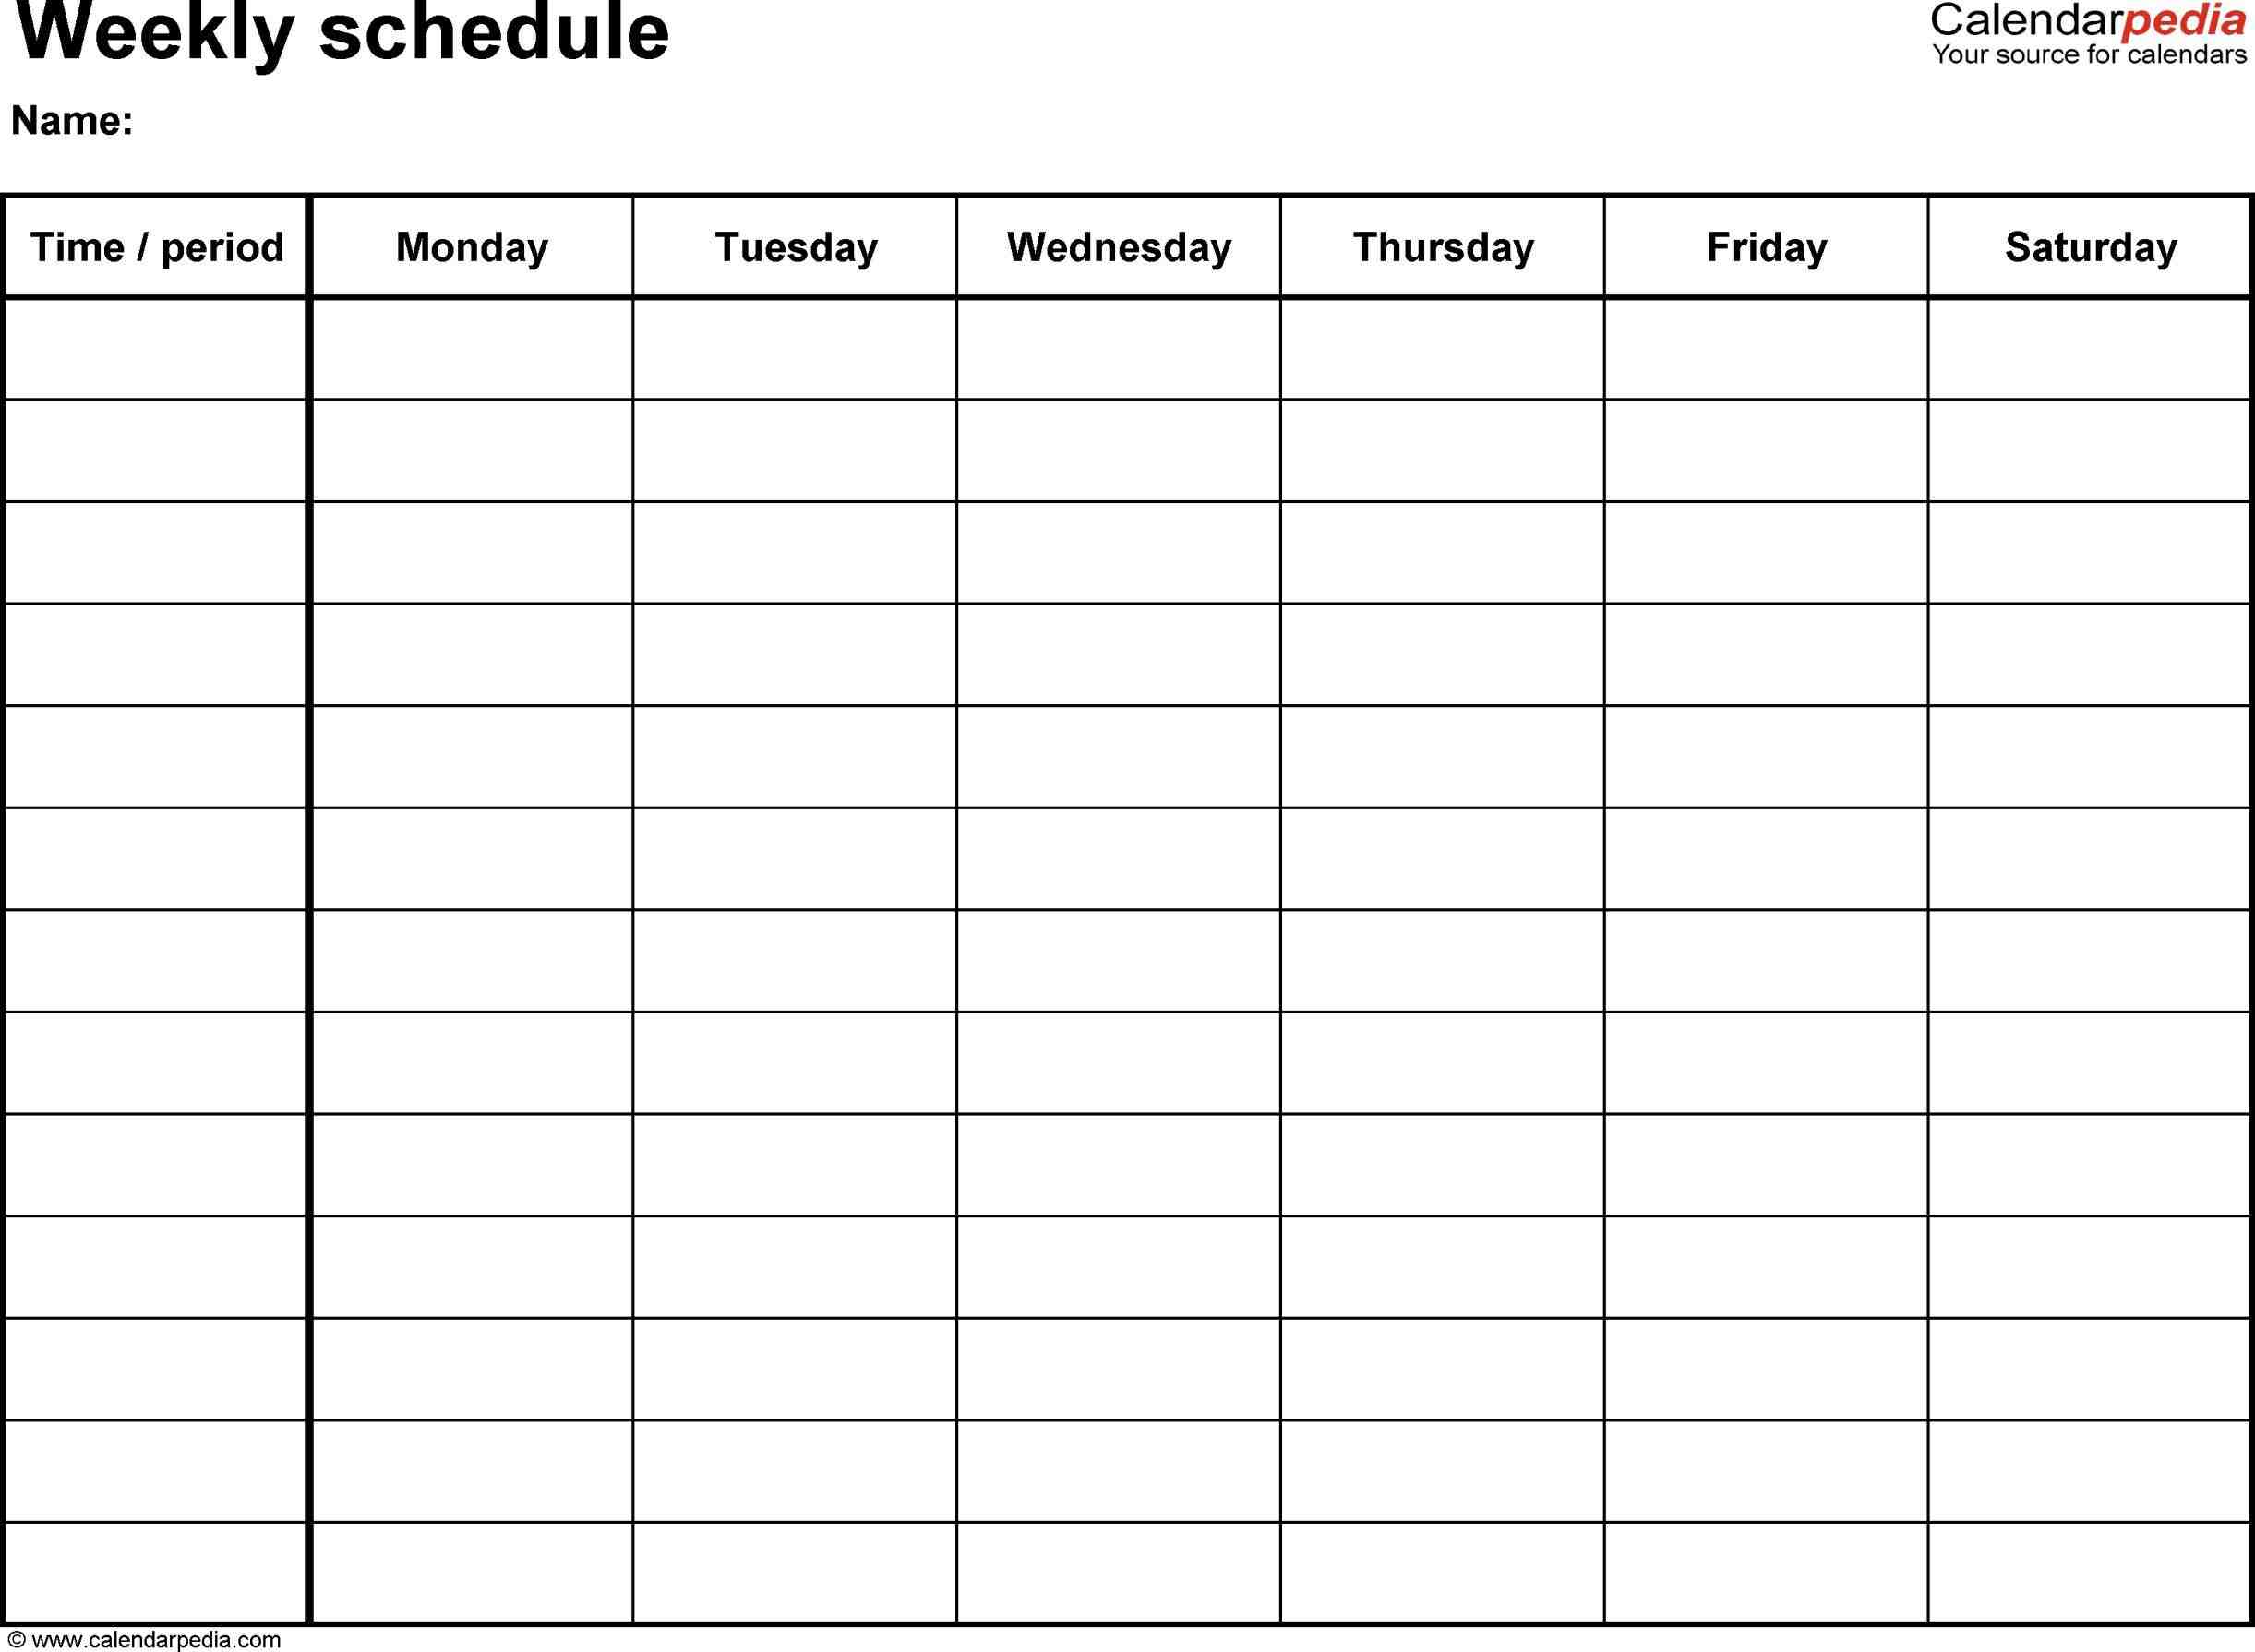 timetable chart for class timetable chart for class